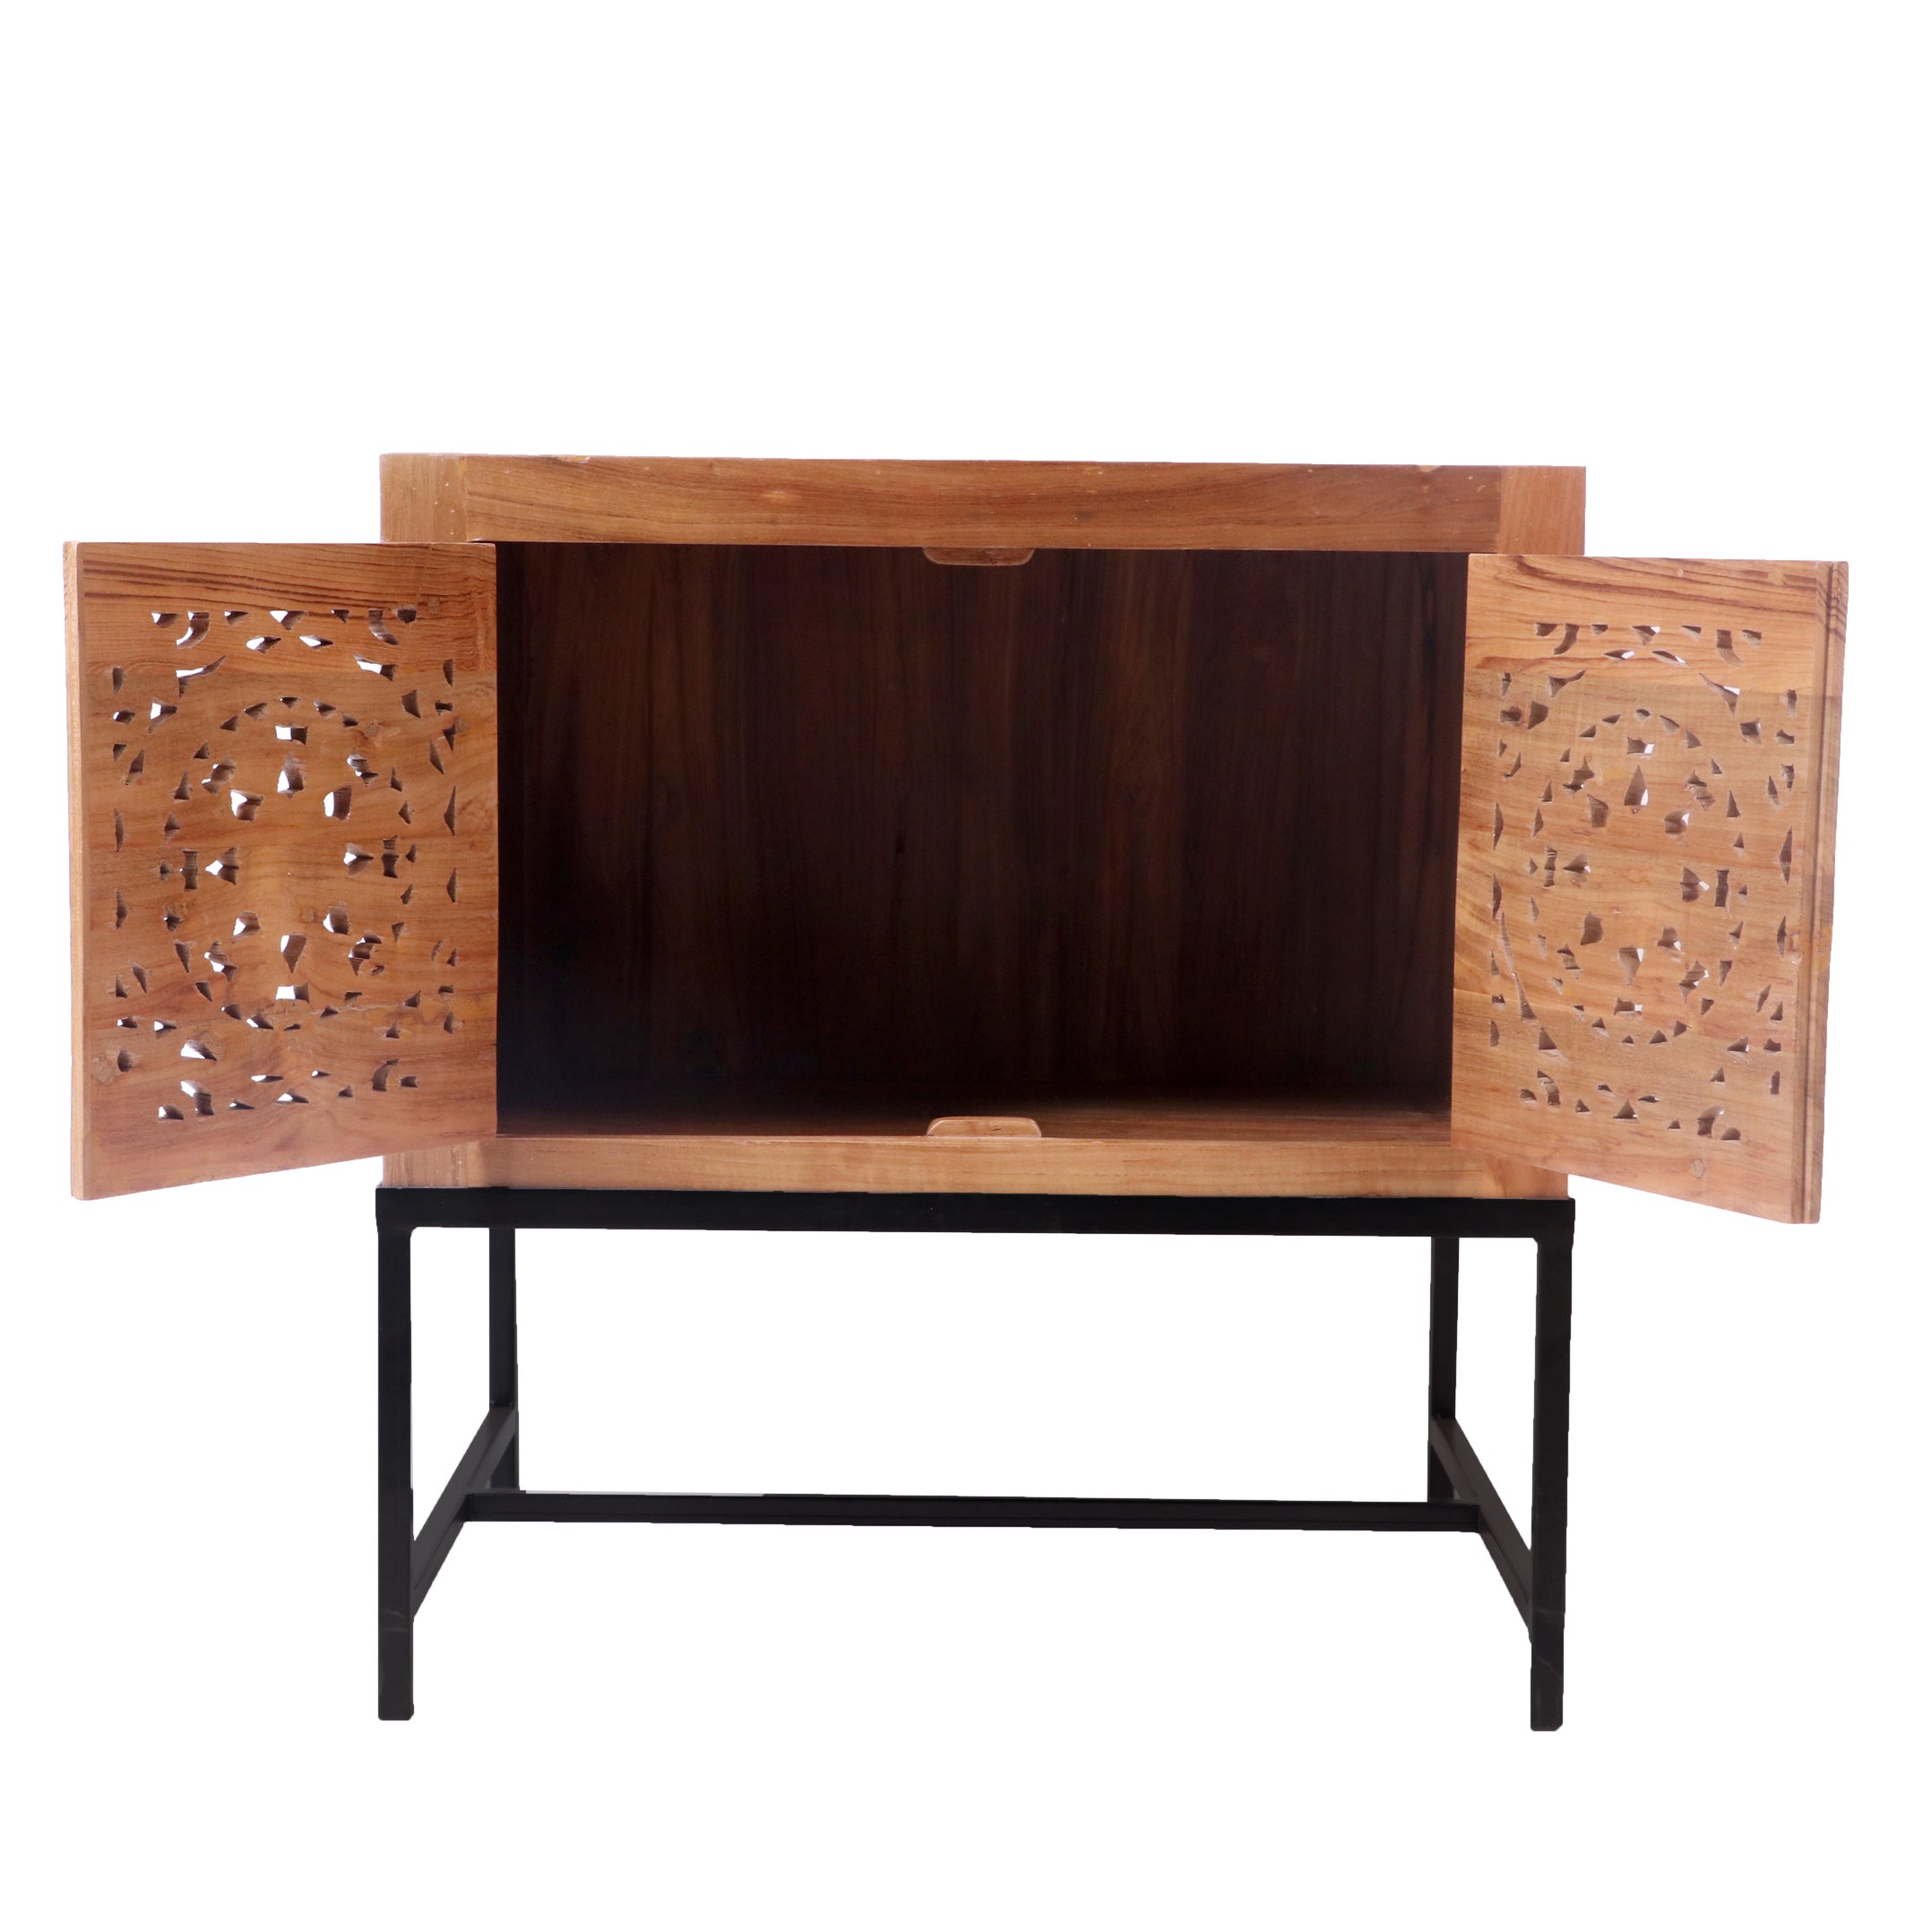 Teak wood Double Door Cabinet with Metallic Stand Cupboard